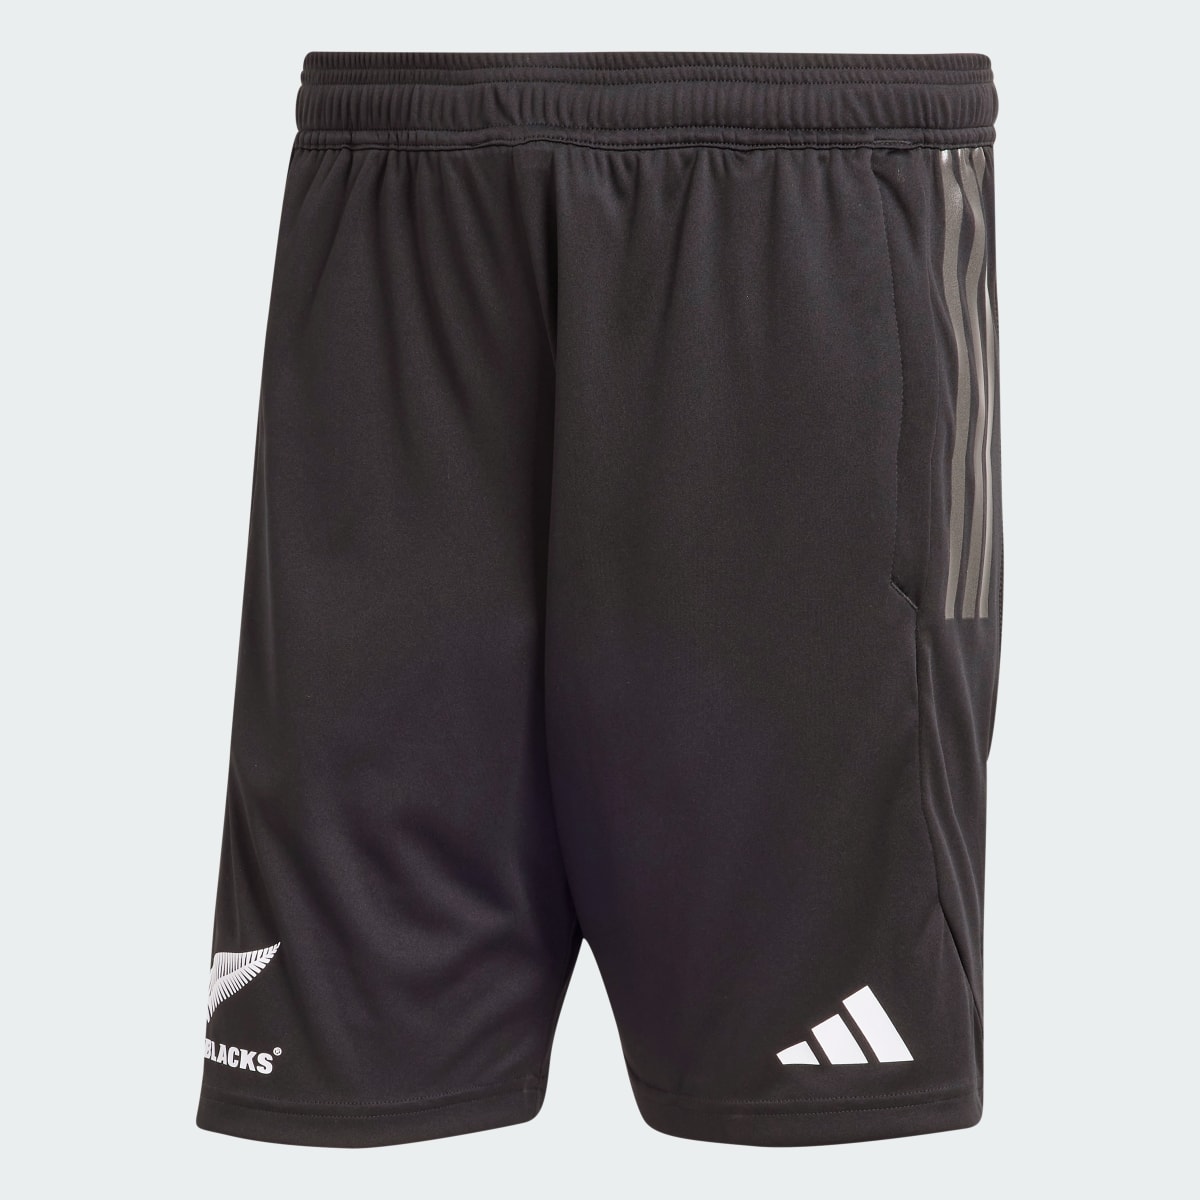 Adidas All Blacks Rugby Gym Shorts. 4